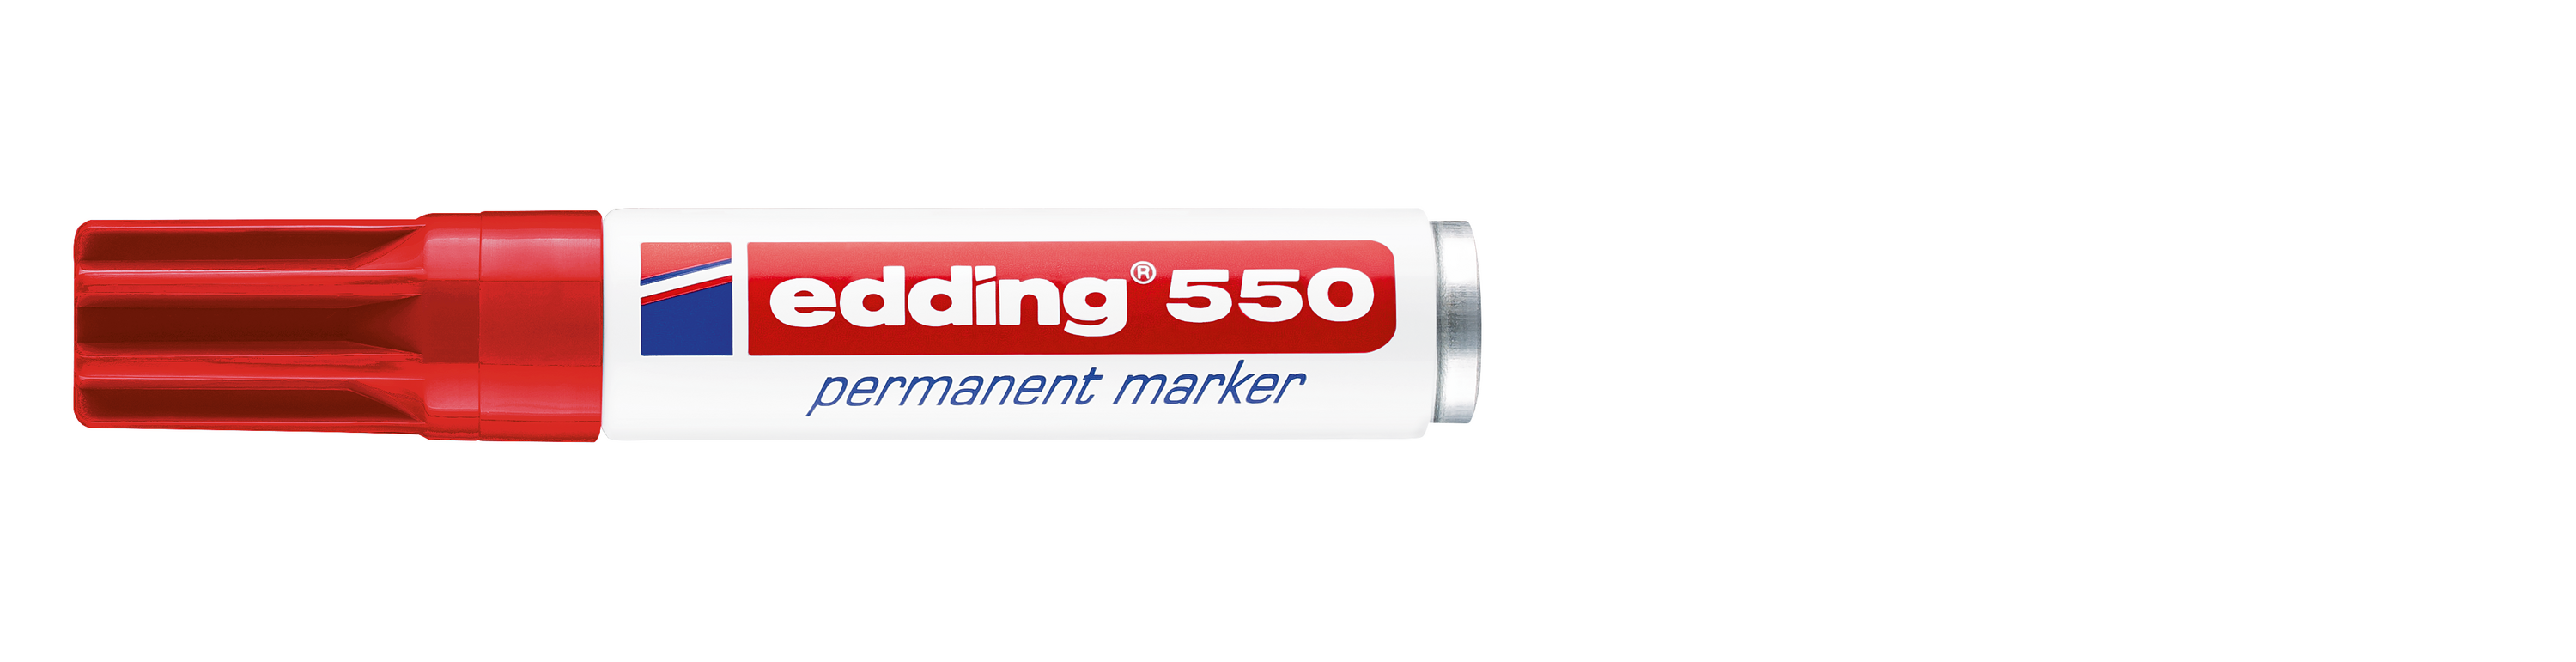 edding - Permanentmarker 550